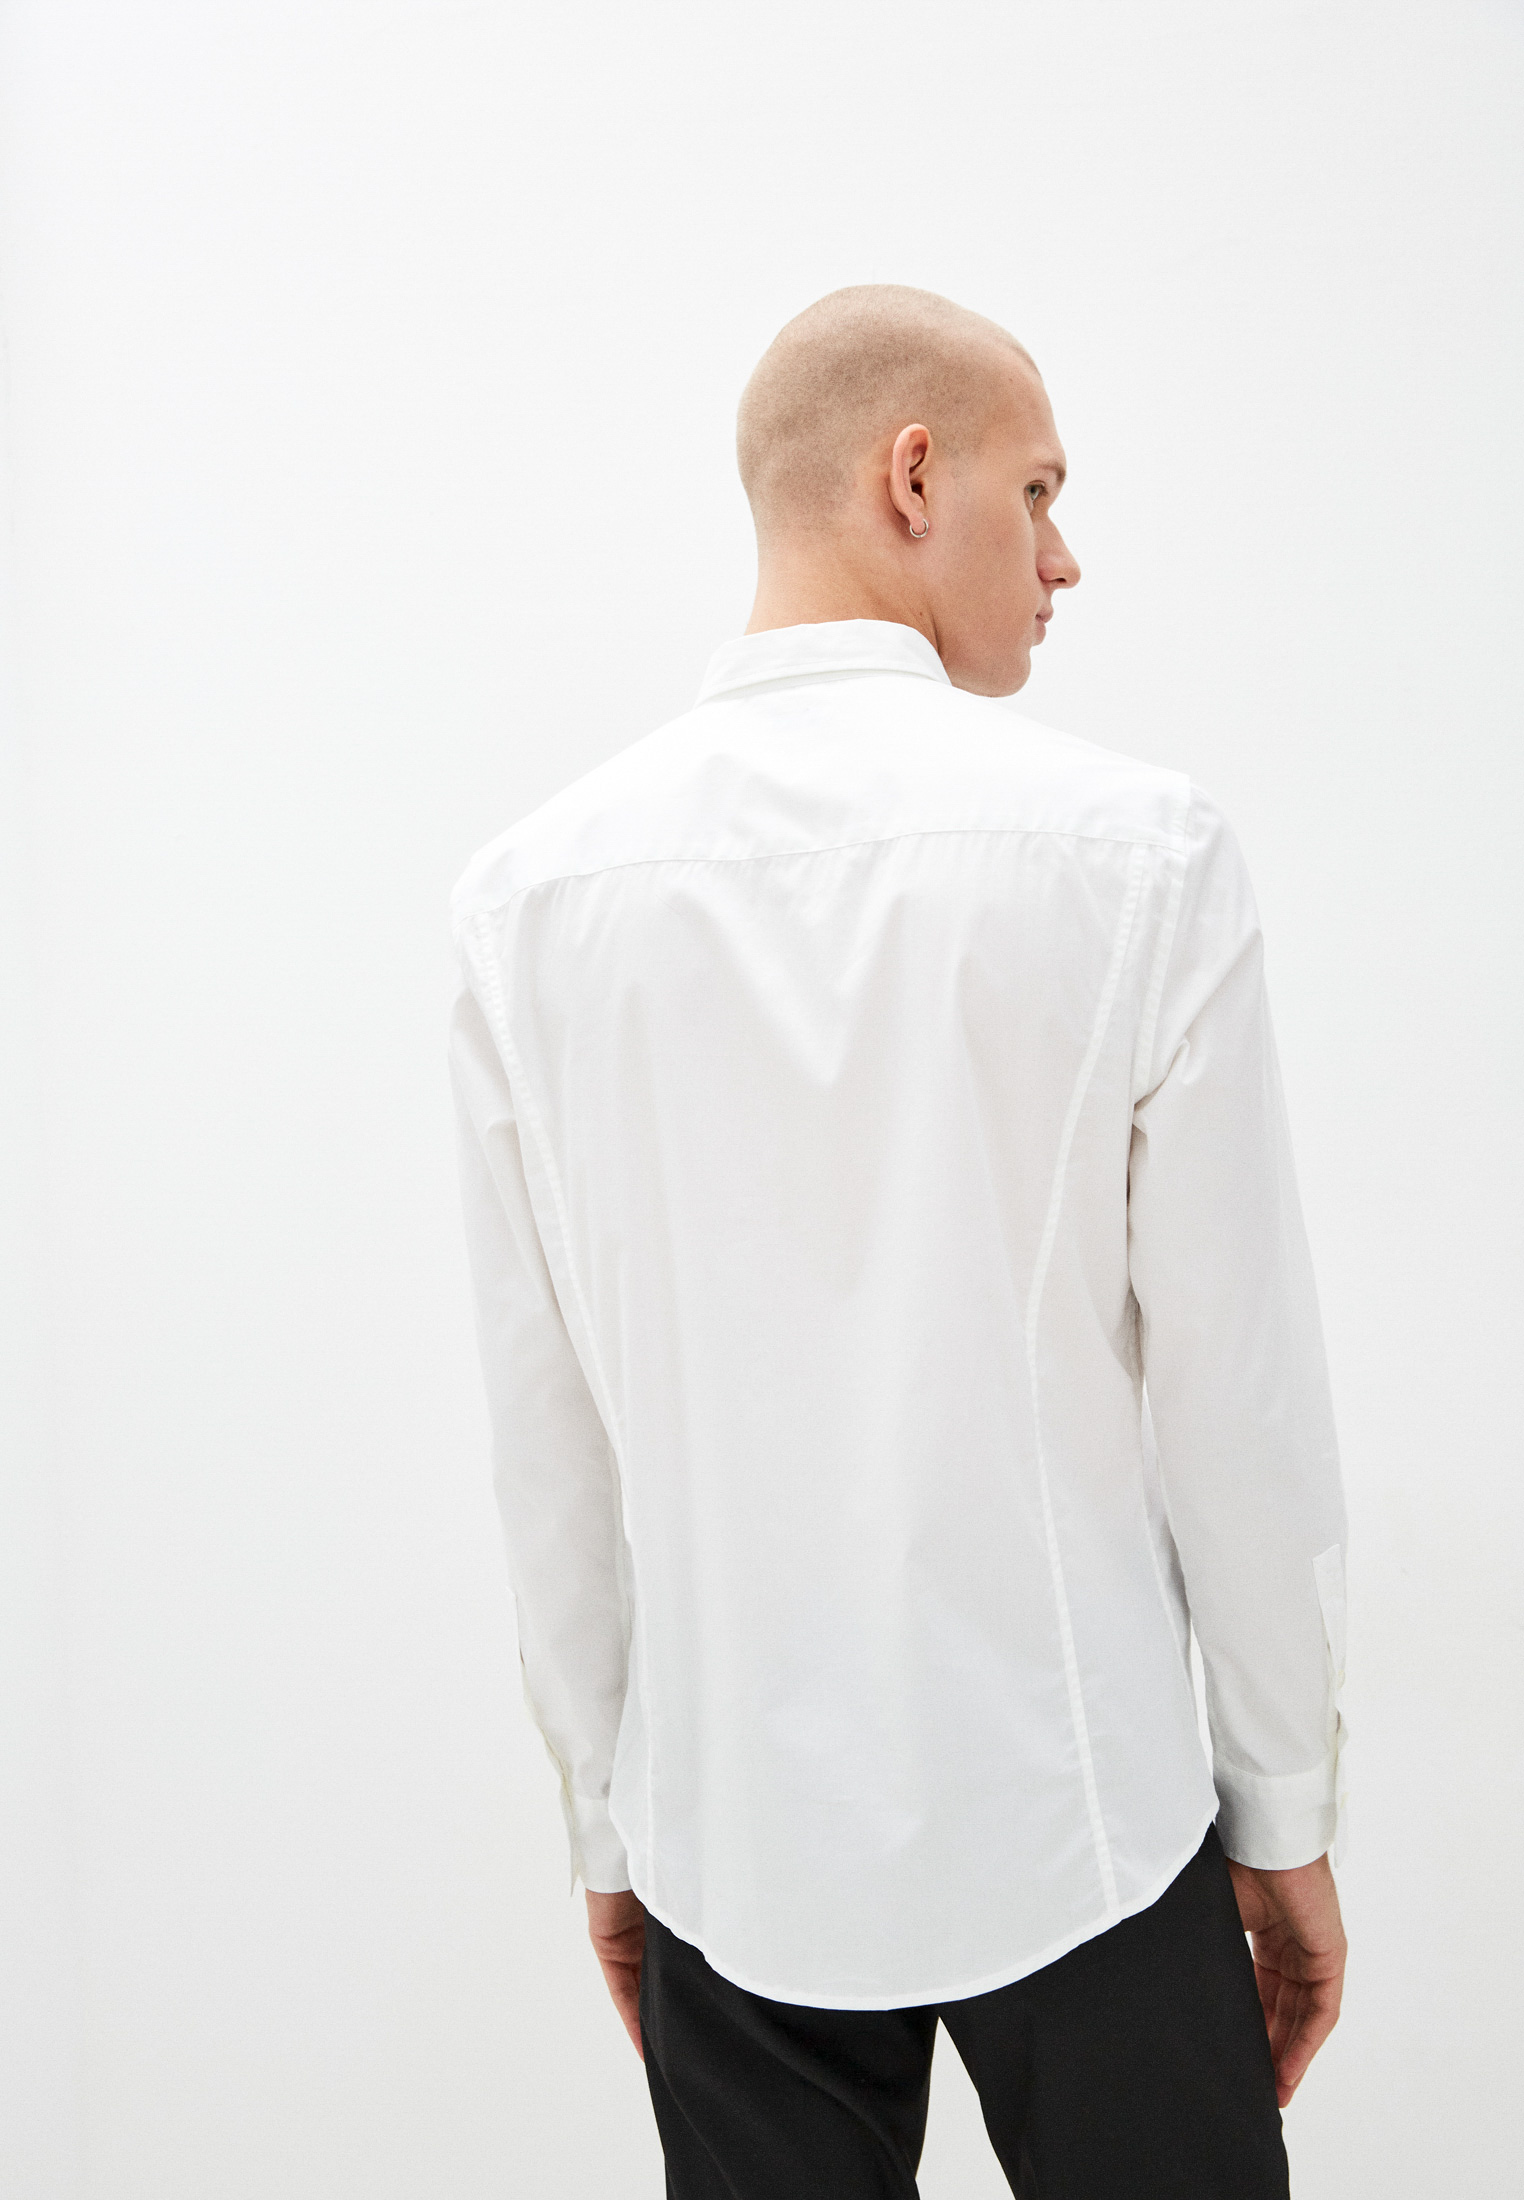 Рубашка с длинным рукавом Bikkembergs (Биккембергс) C C 011 03 S 2931: изображение 8